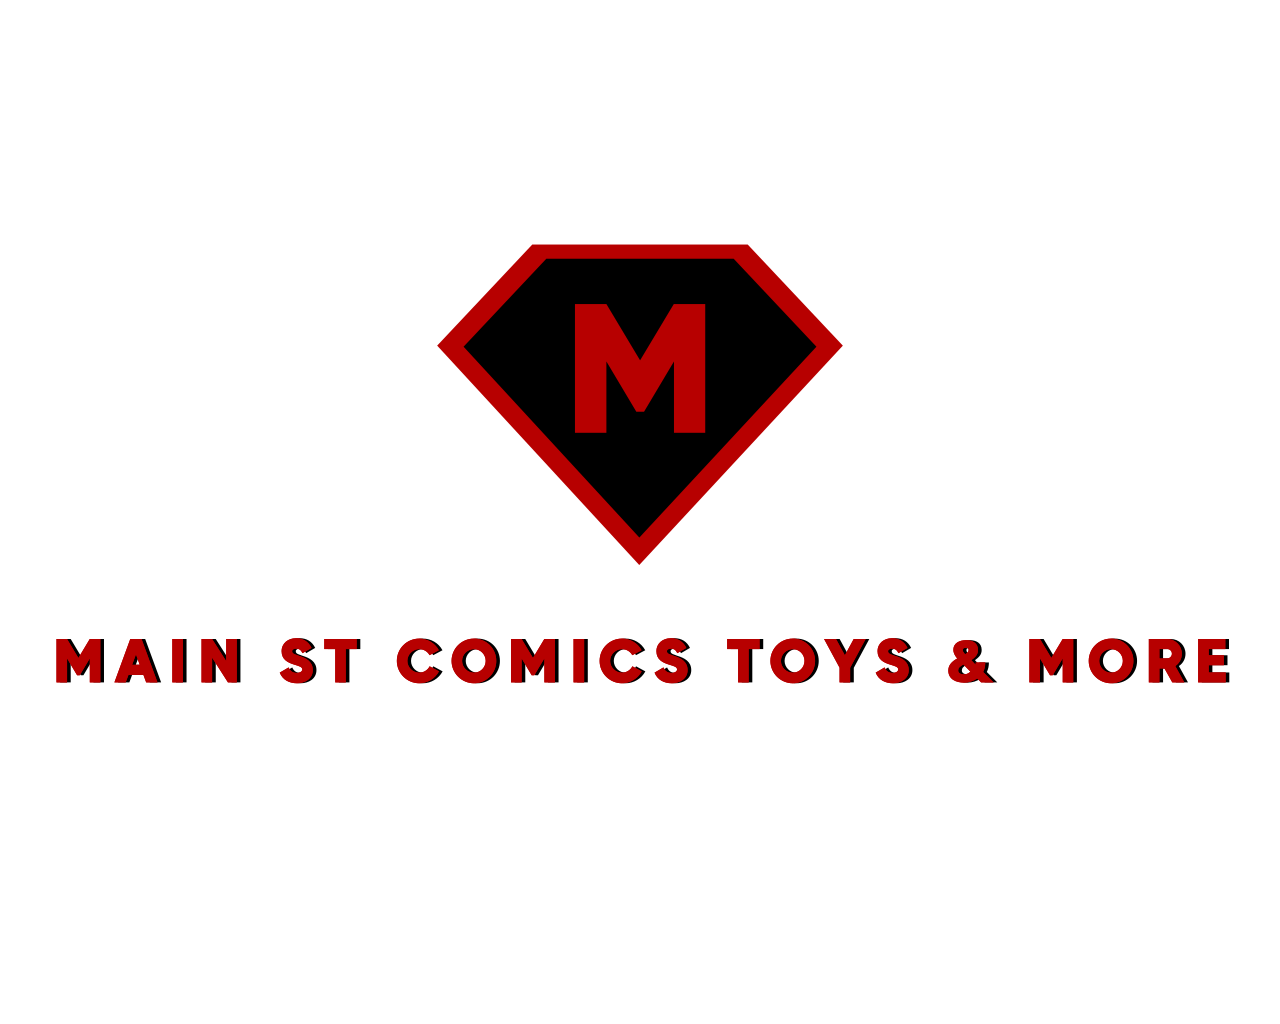 MAIN ST COMICS, TOYS & MORE